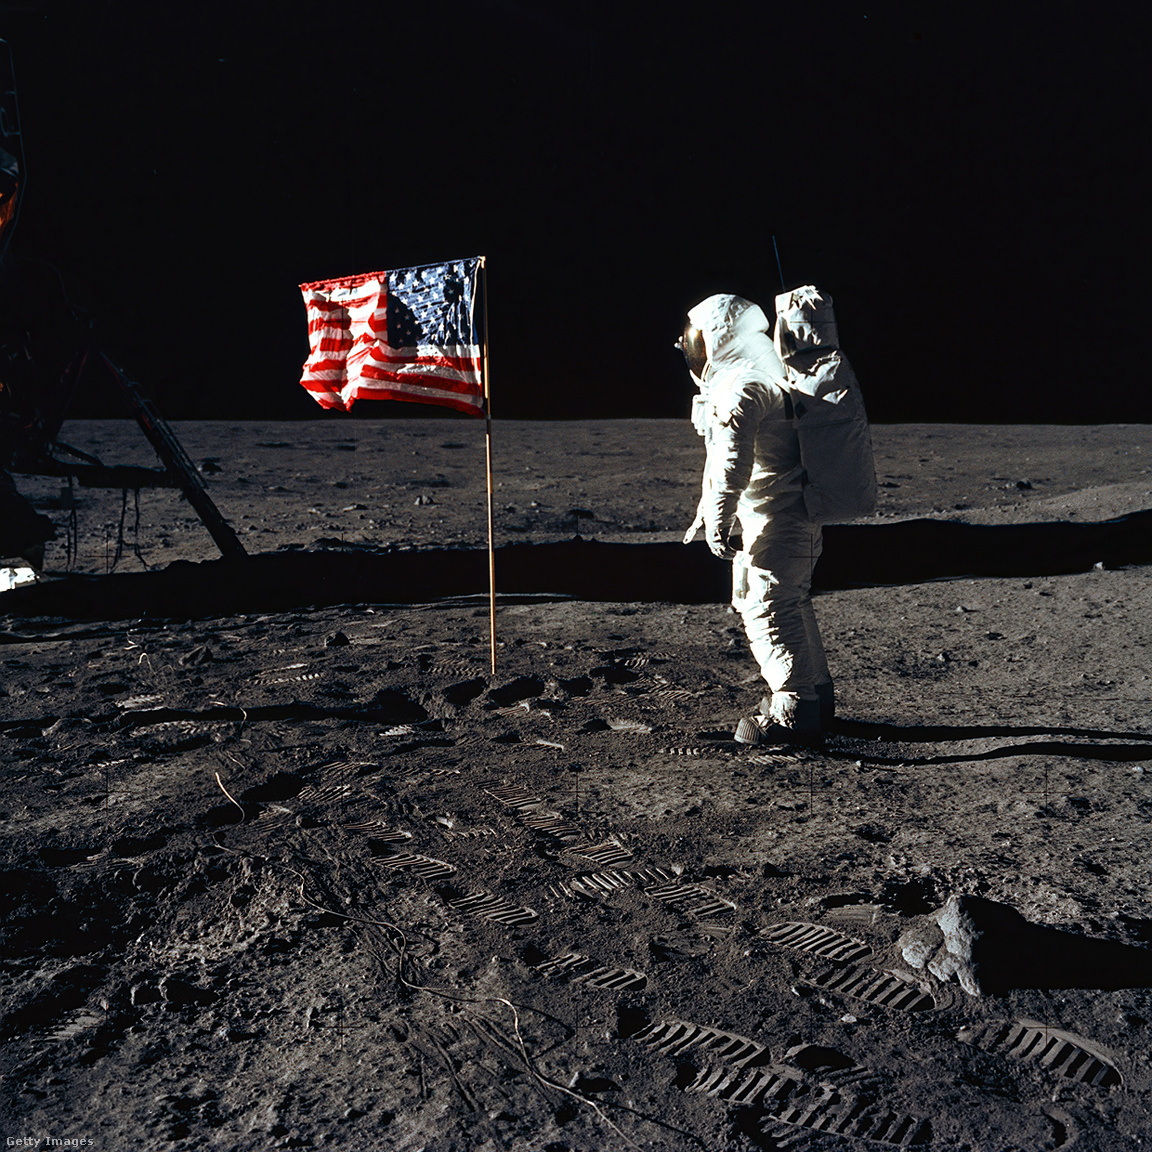 Edwin E. Buzz Aldrin Jr. űrhajós az Egyesült Államok zászlója mellett Holdséta közben. A Holdmodul a bal oldalon található, és az űrhajósok lábnyomai jól láthatóak a Hold talajában. Neil A. Armstrong űrhajós, az Apollo 11 parancsnoka ezt a képet egy 70 mm-es Hasselblad kamerával készítette